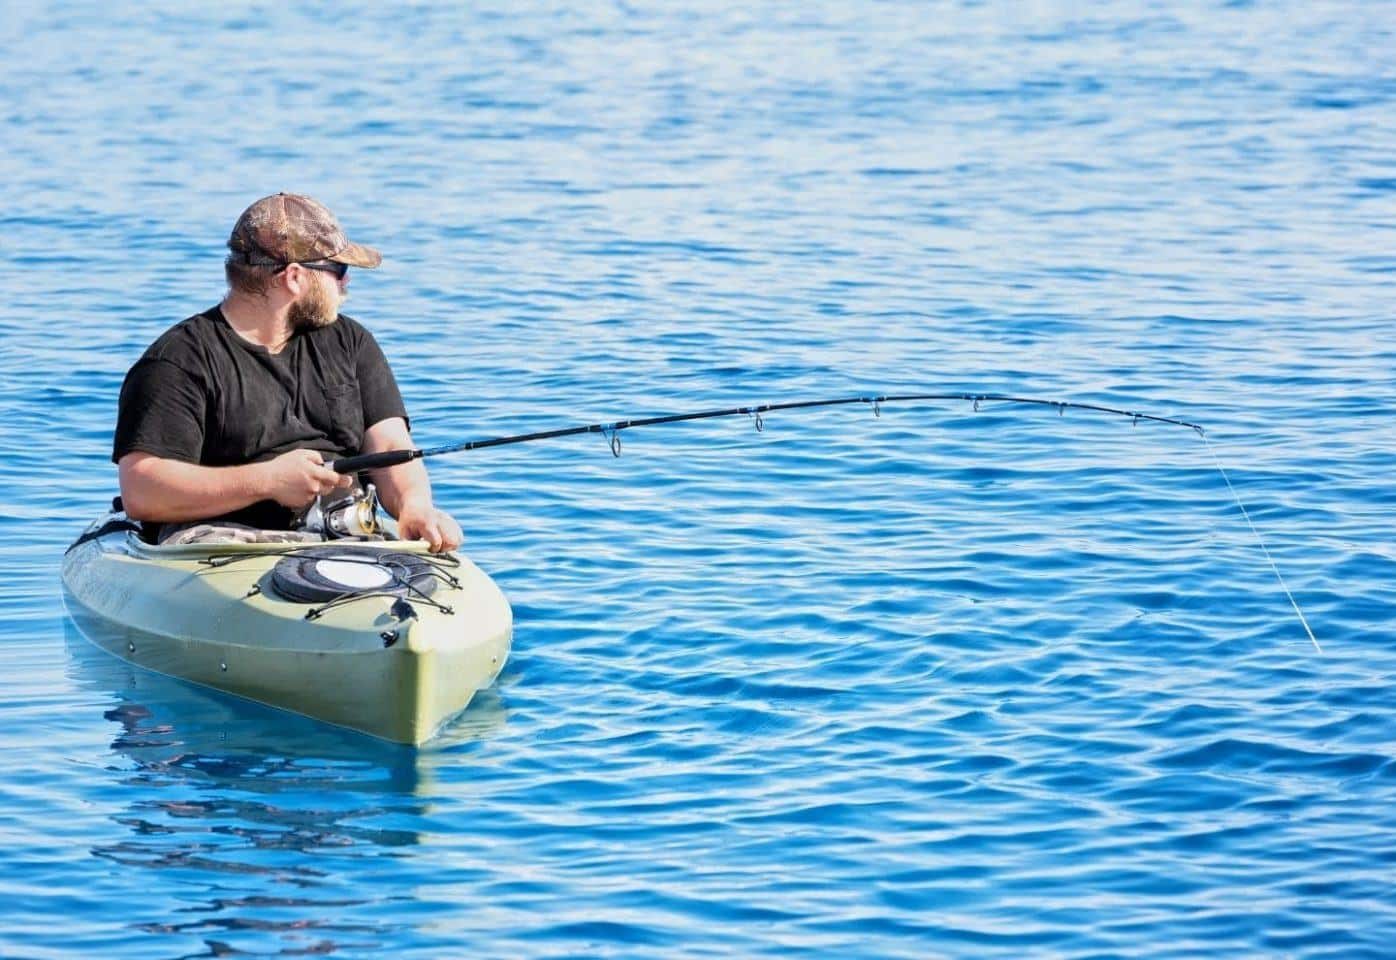 Man on a fishing kayak